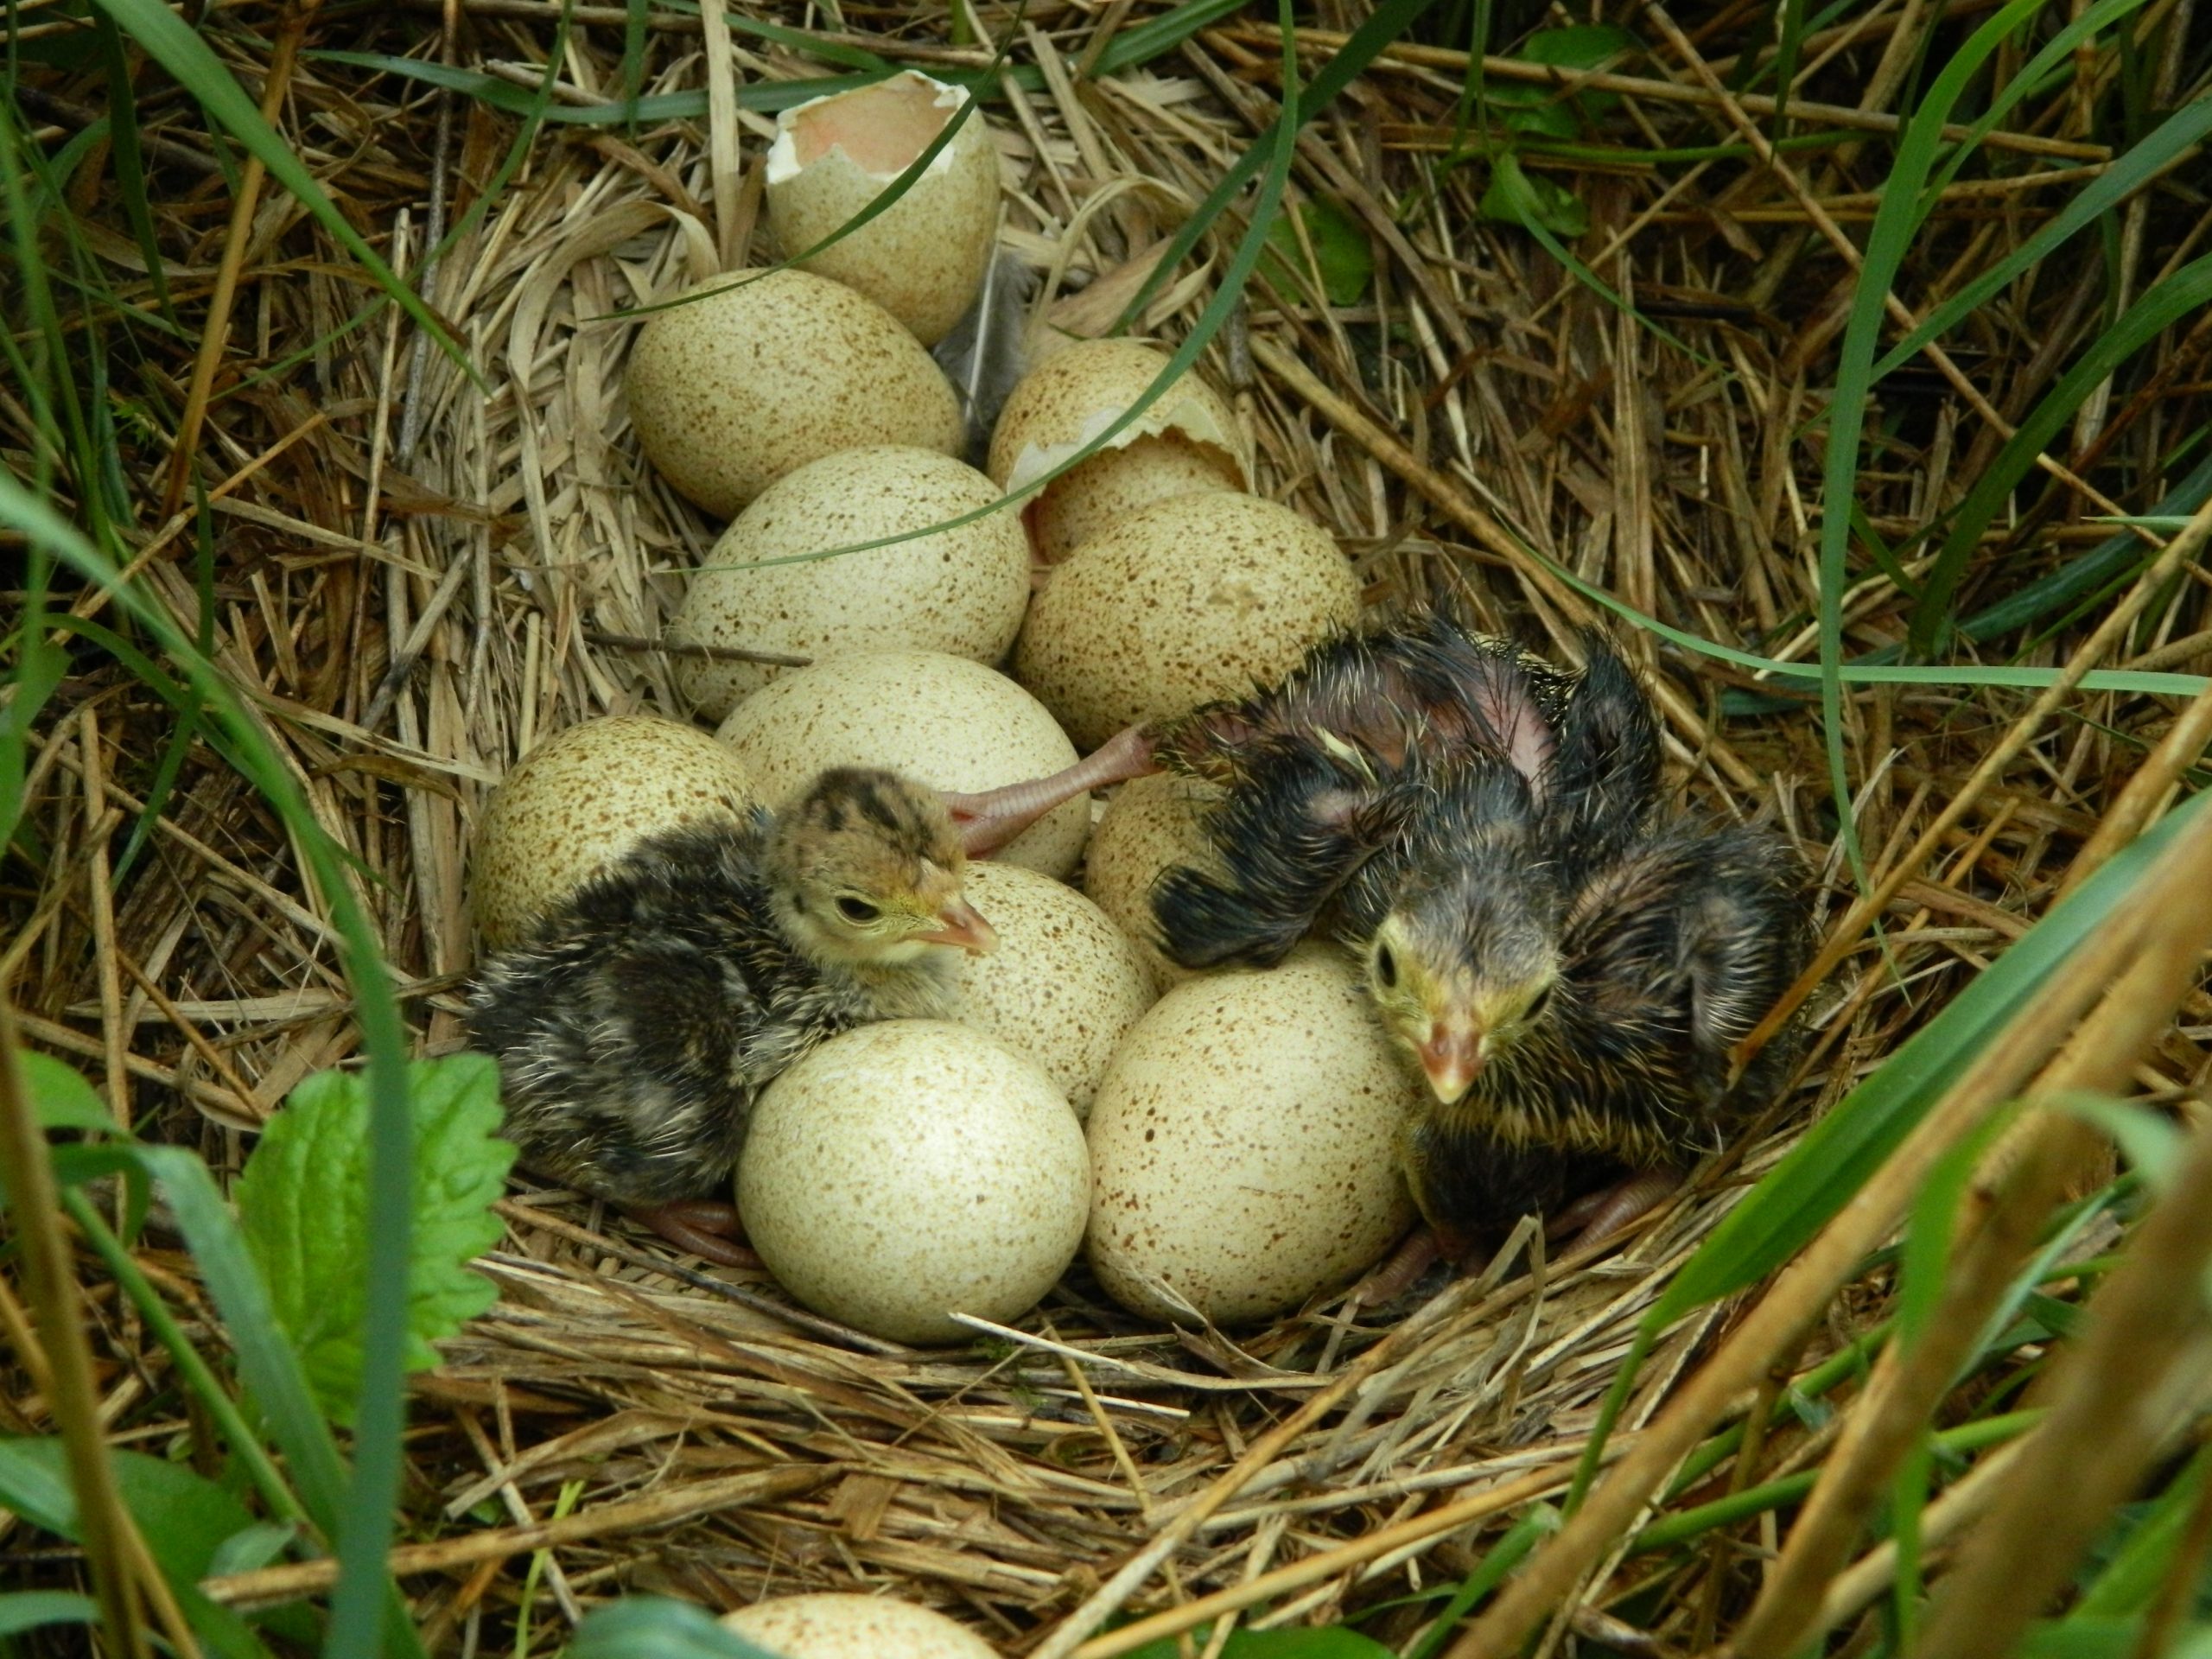 Wild turkey hatches in nest with eggs